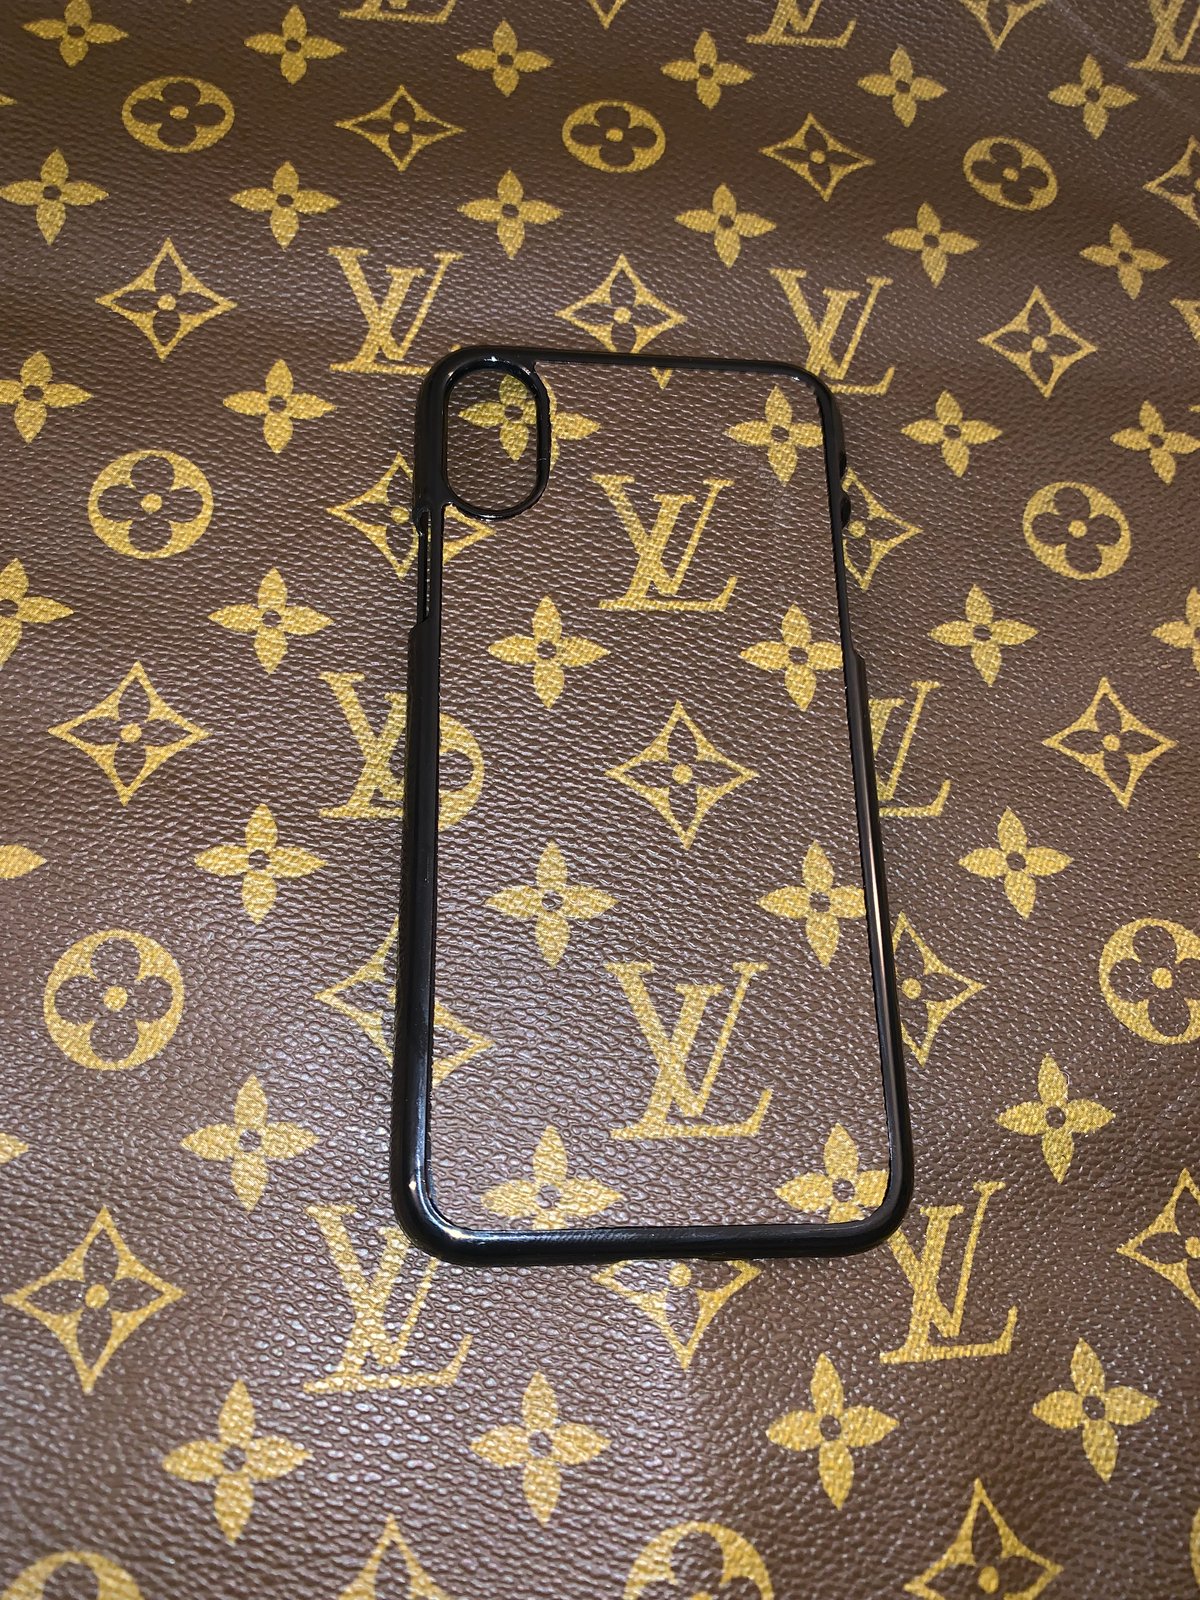 Louis Vuitton iPhone X/XS Case | Damaged_Goods_TM